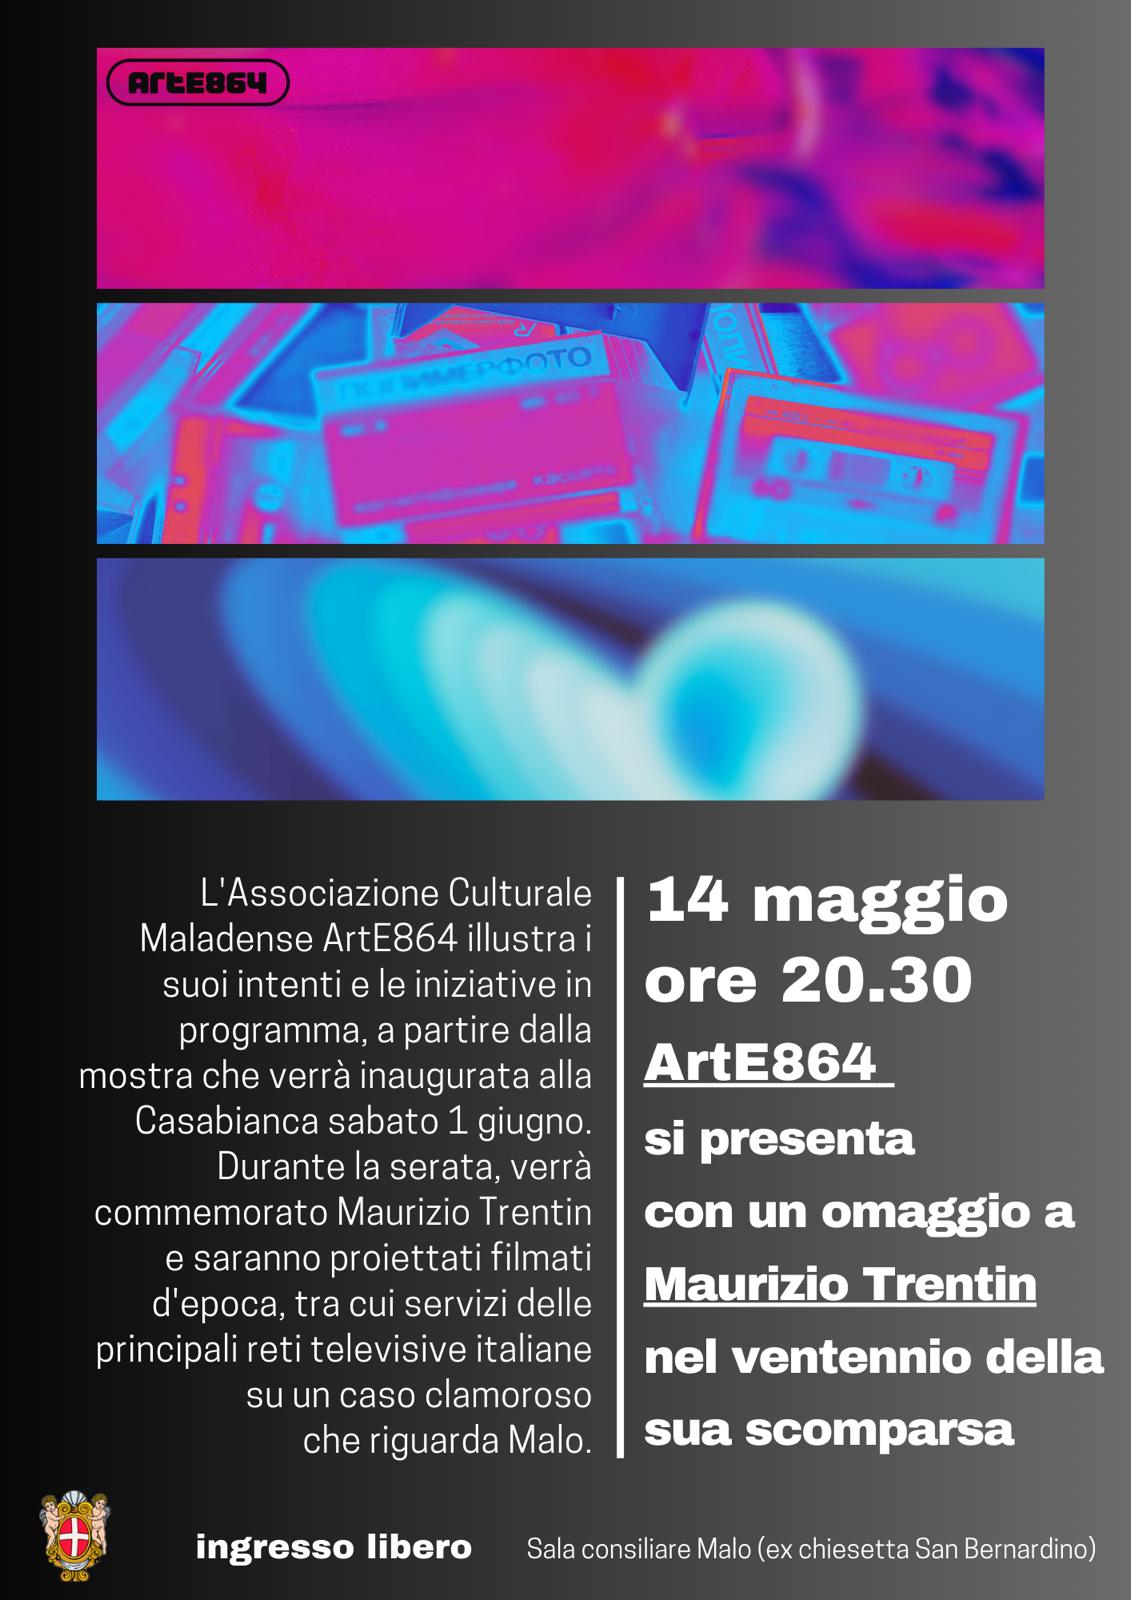 La nuova Associazione ArtE864 si presenta con un omaggio a Maurizio Trentin.